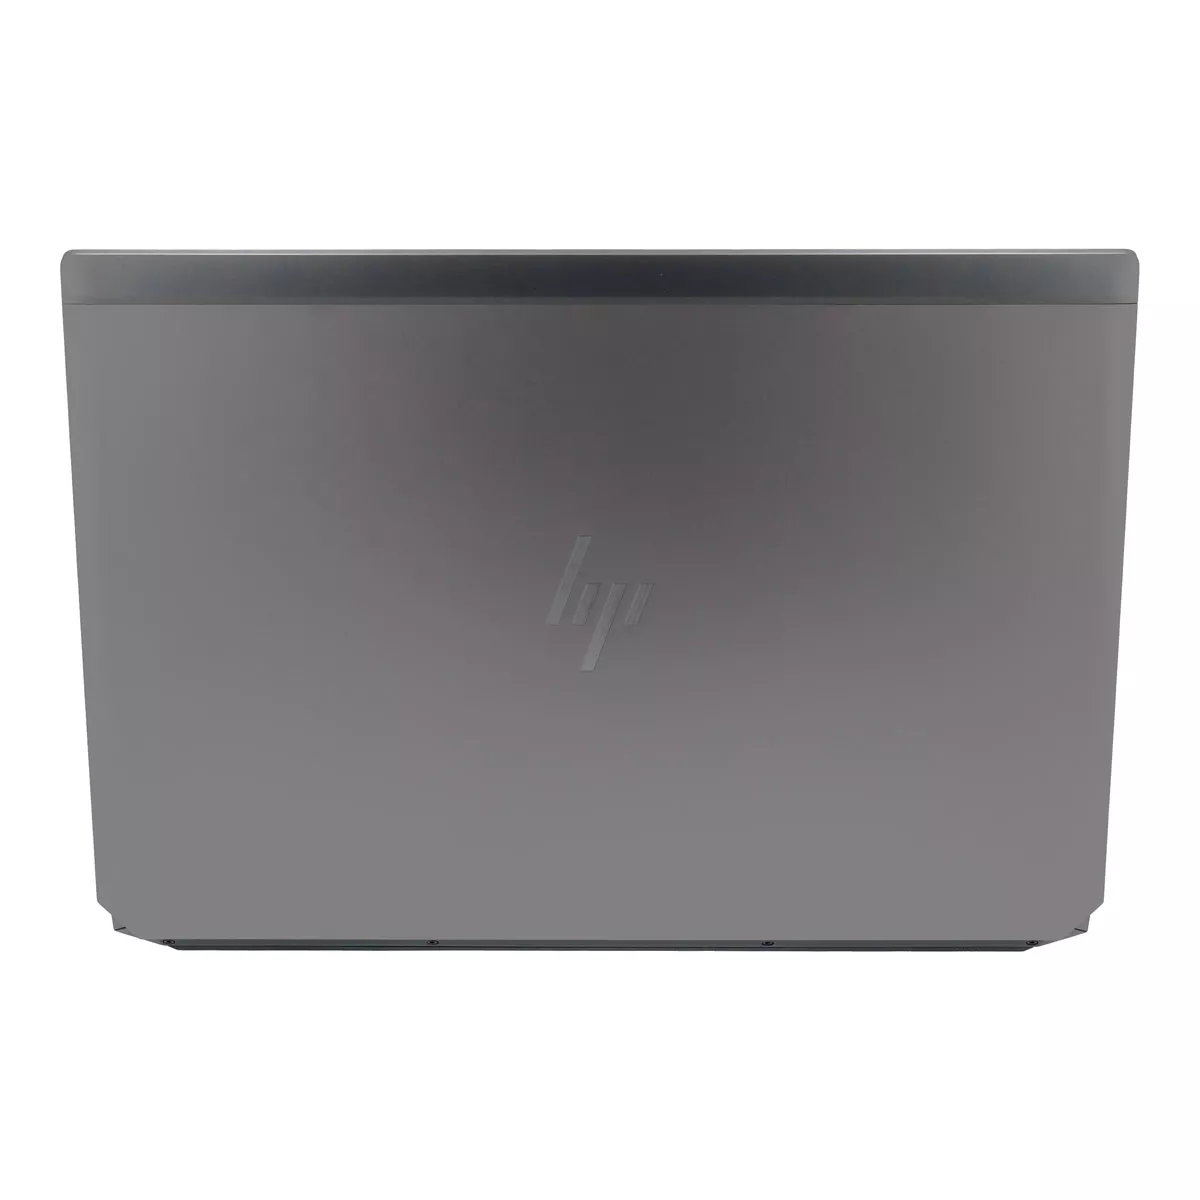 HP ZBook 17 G6 Core i7 9850H nVidia Quadro RTX 3000M 500 GB M.2 nVME SSD Webcam A